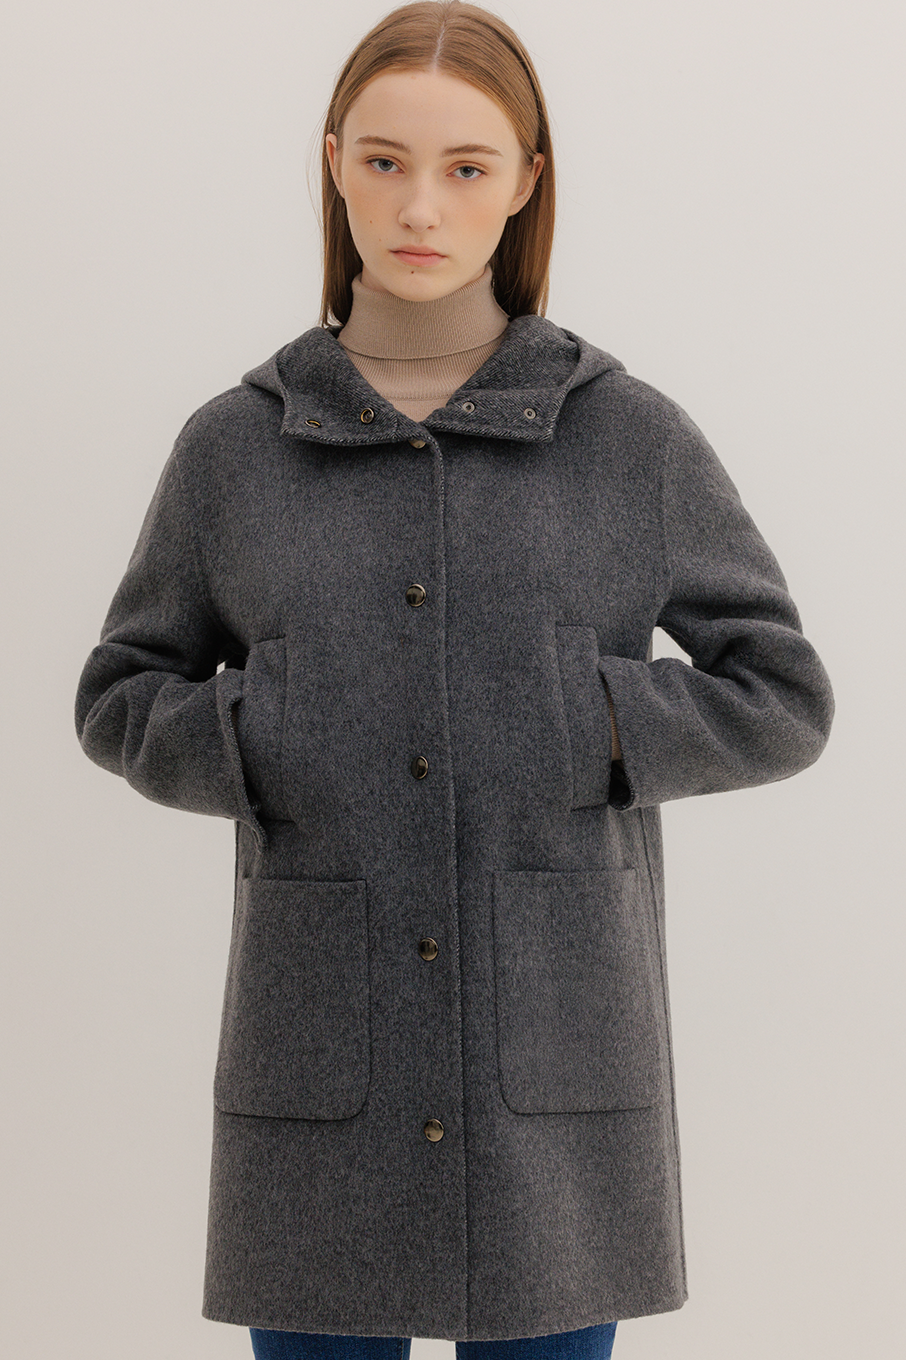 Kleto coat